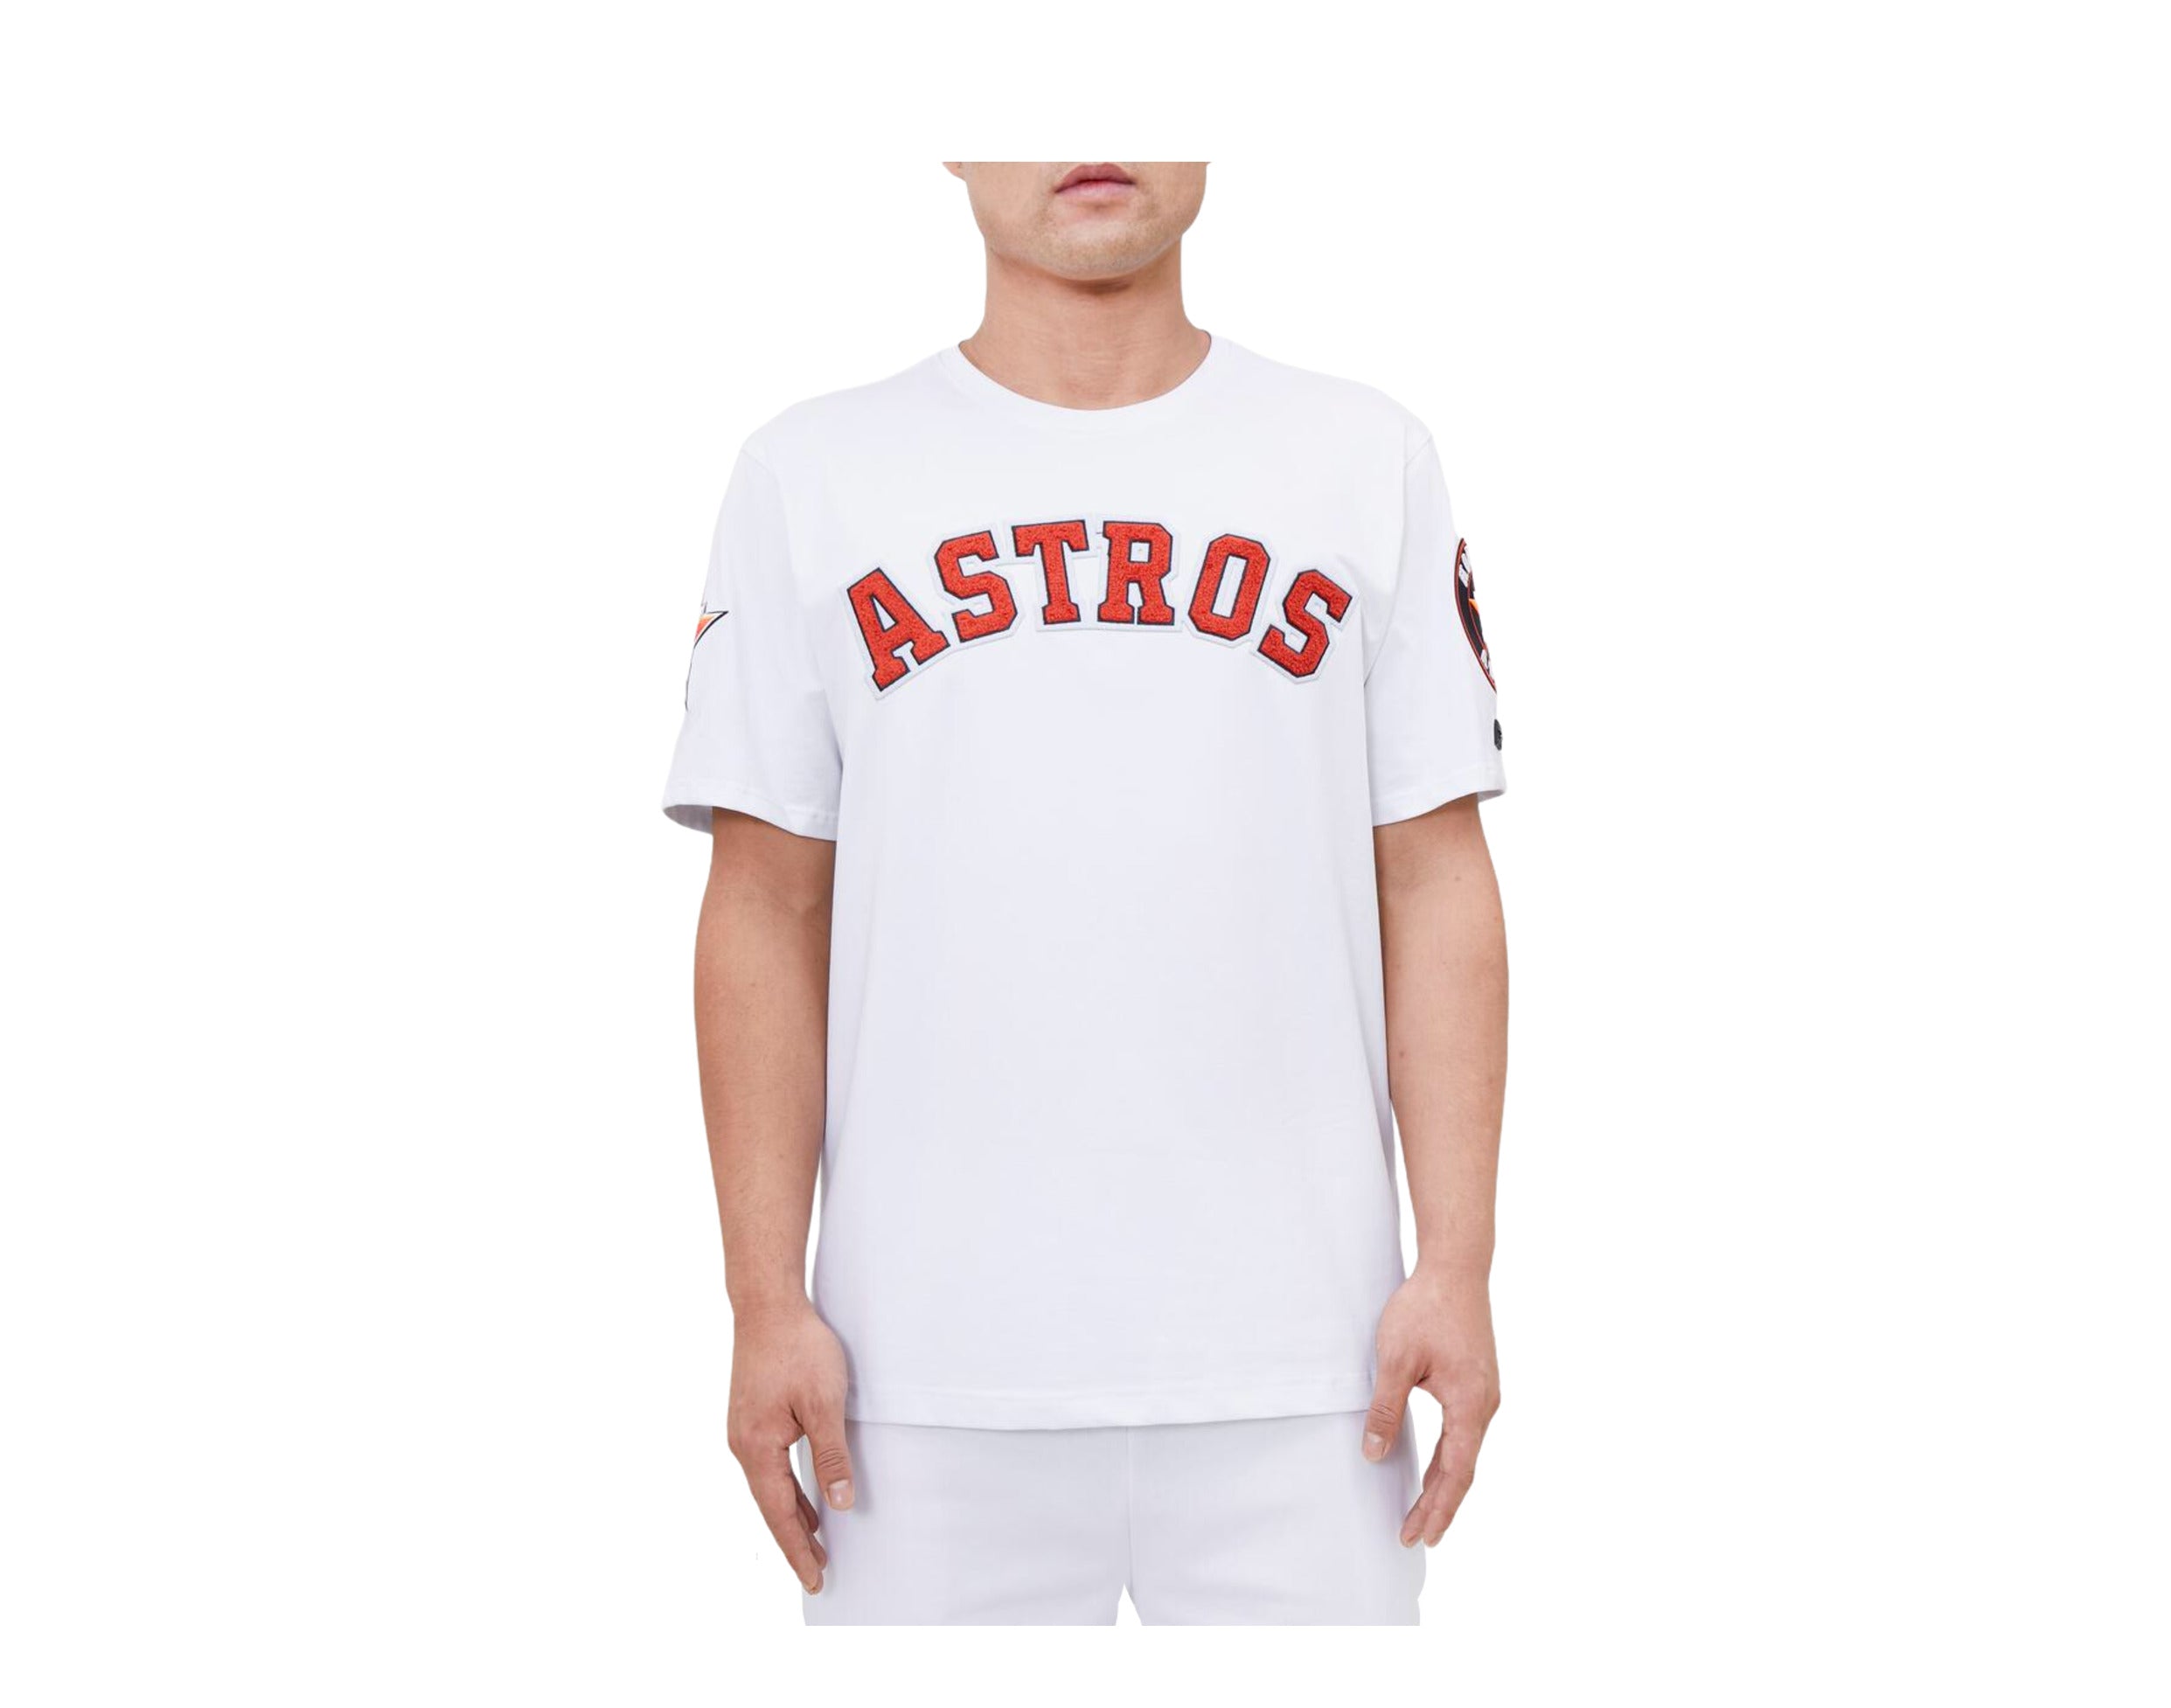 Astros Astros Astros Astros Astros Astros Astros' Men's Pique Polo Shirt